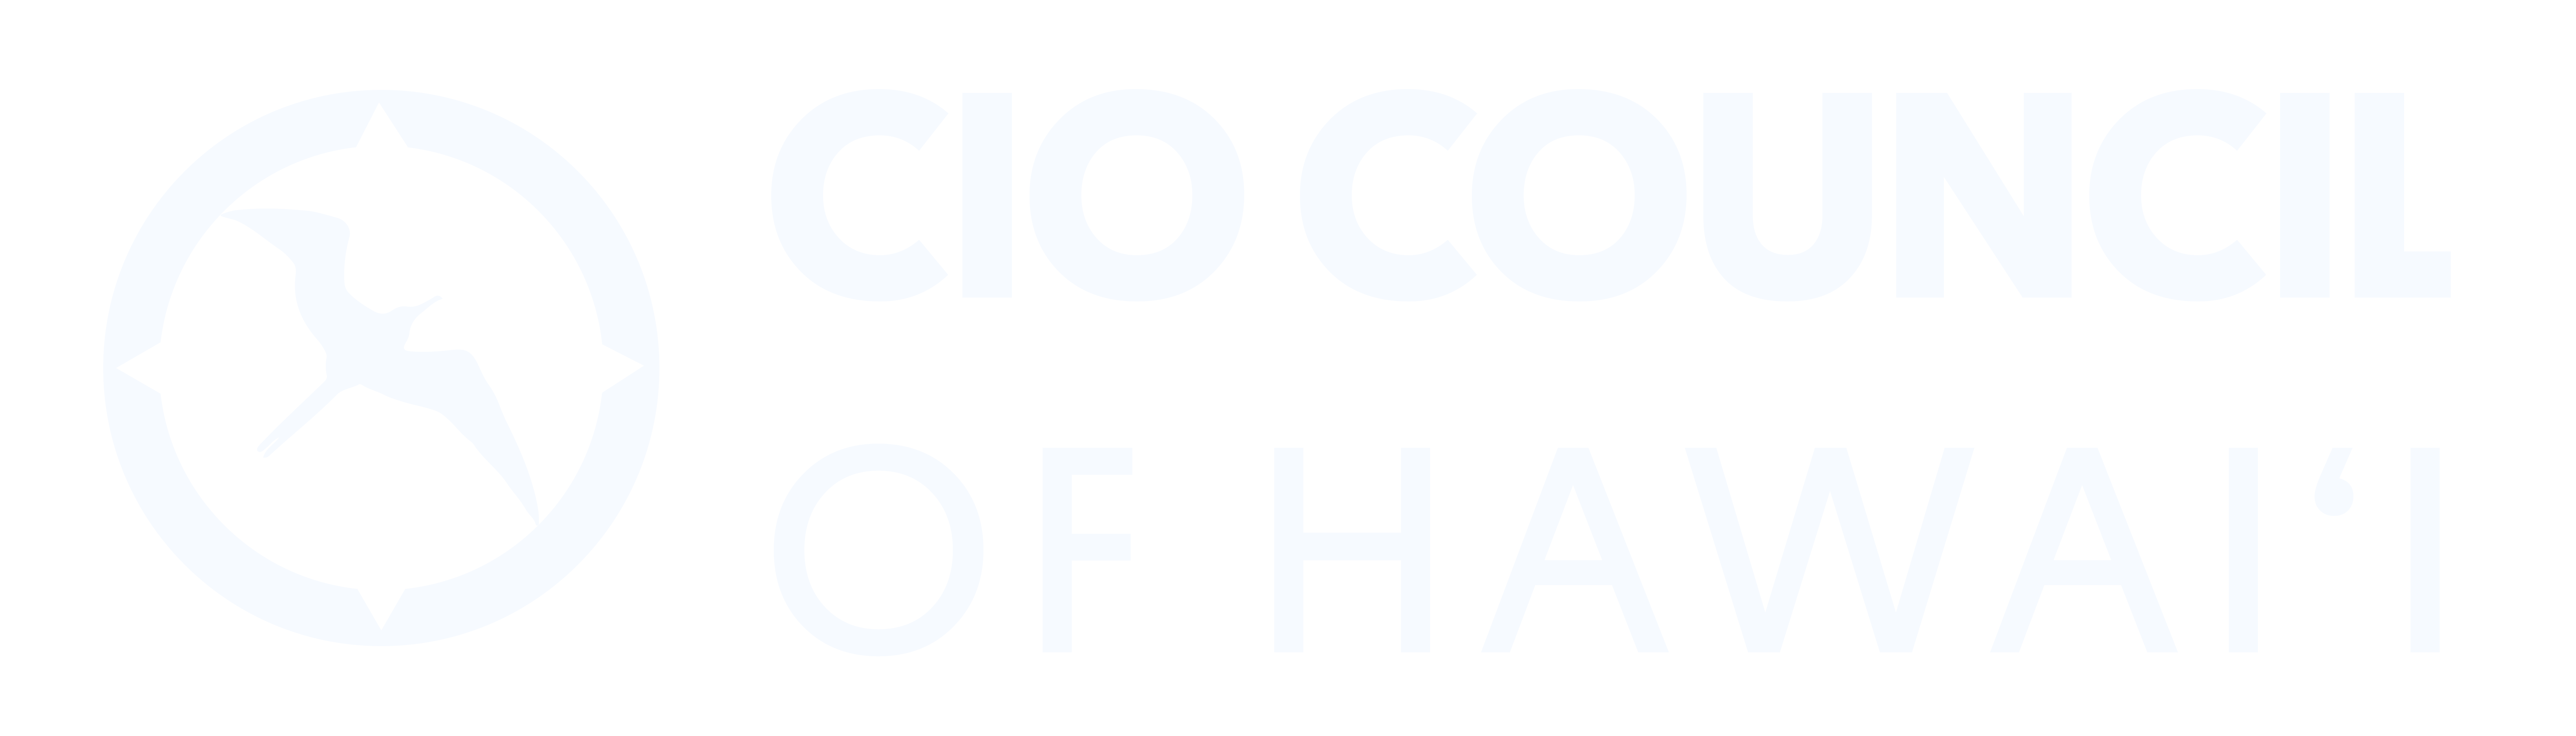 CIO Council